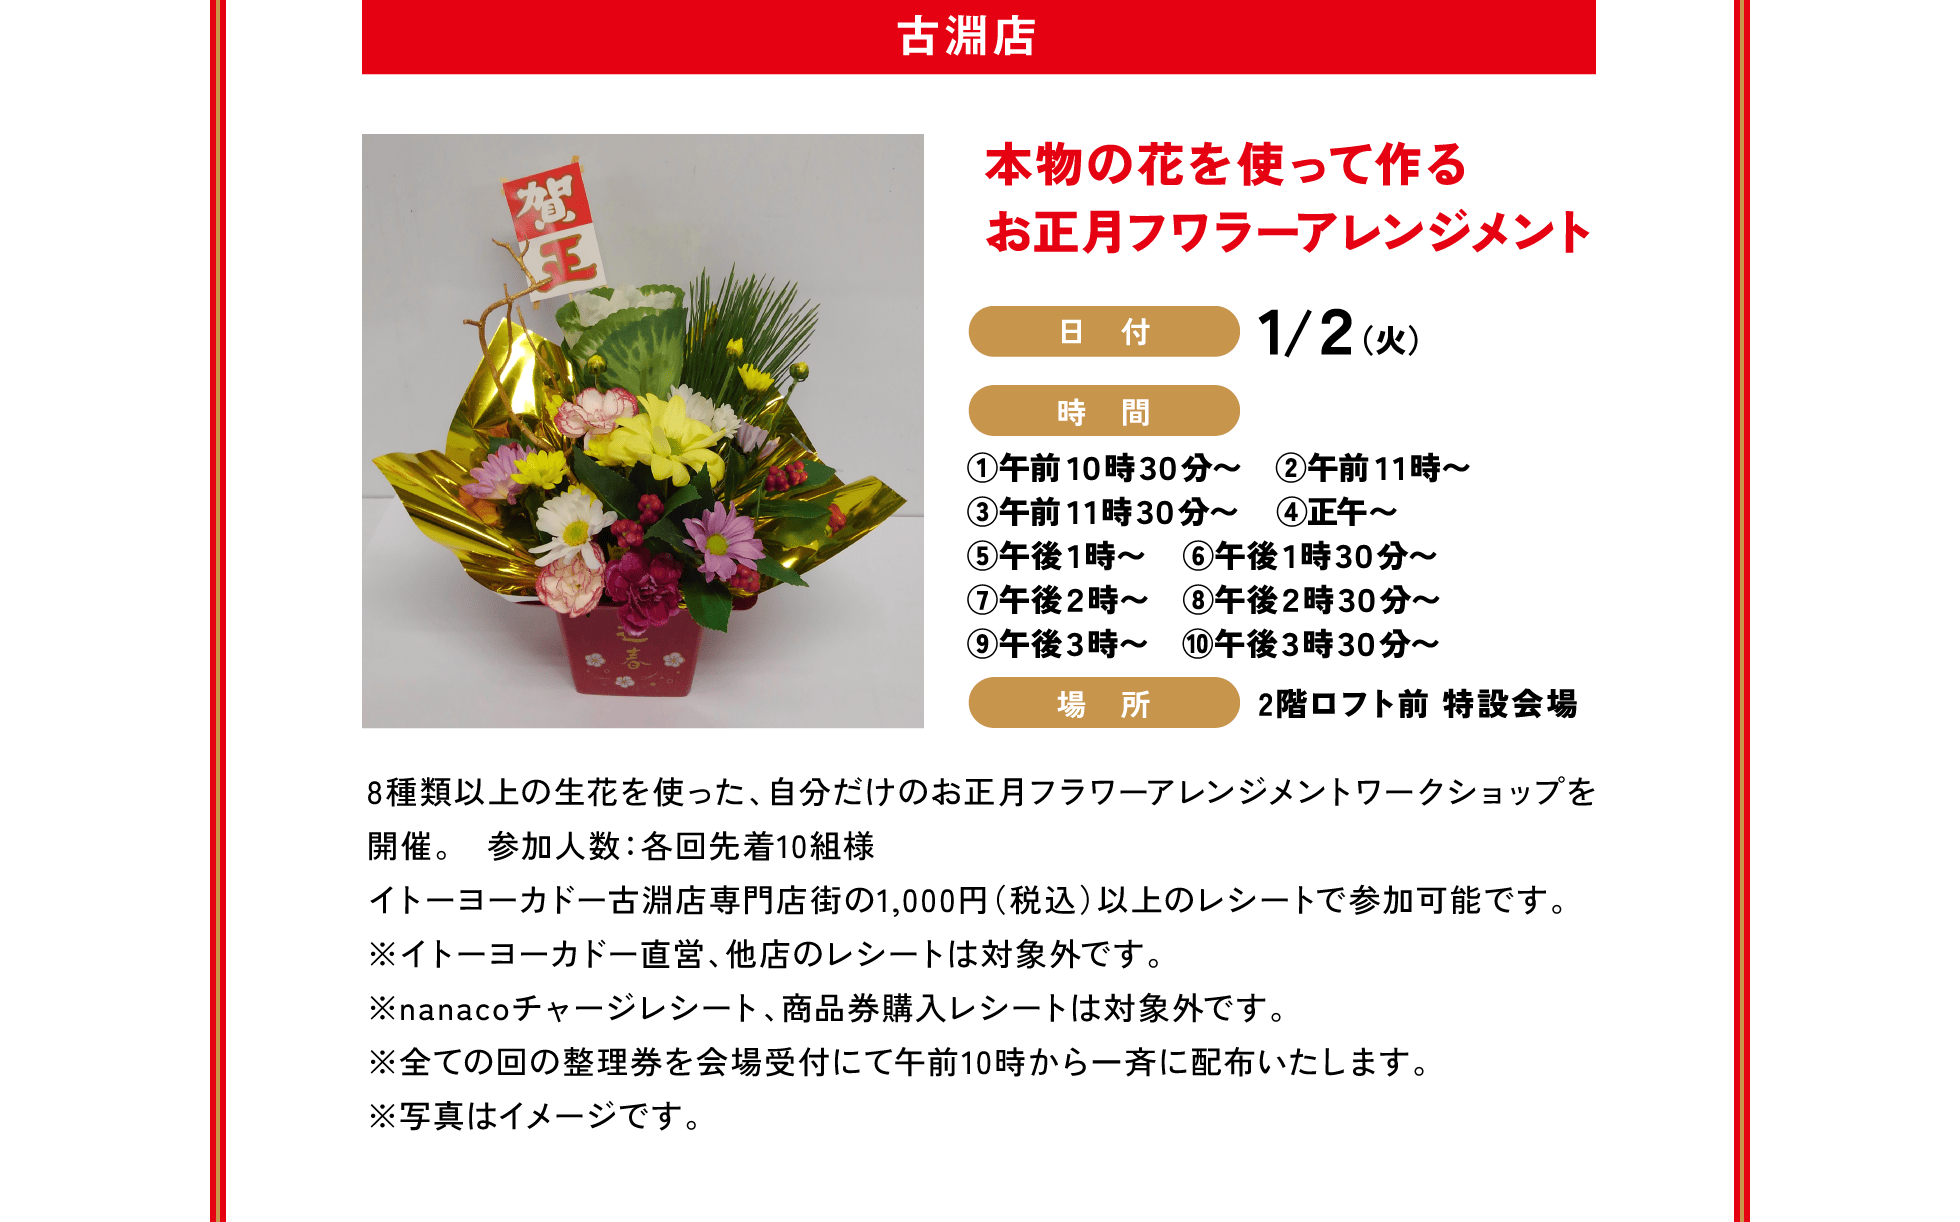 古淵店 / 本物の花を使って作るお正月フワラーアレンジメント